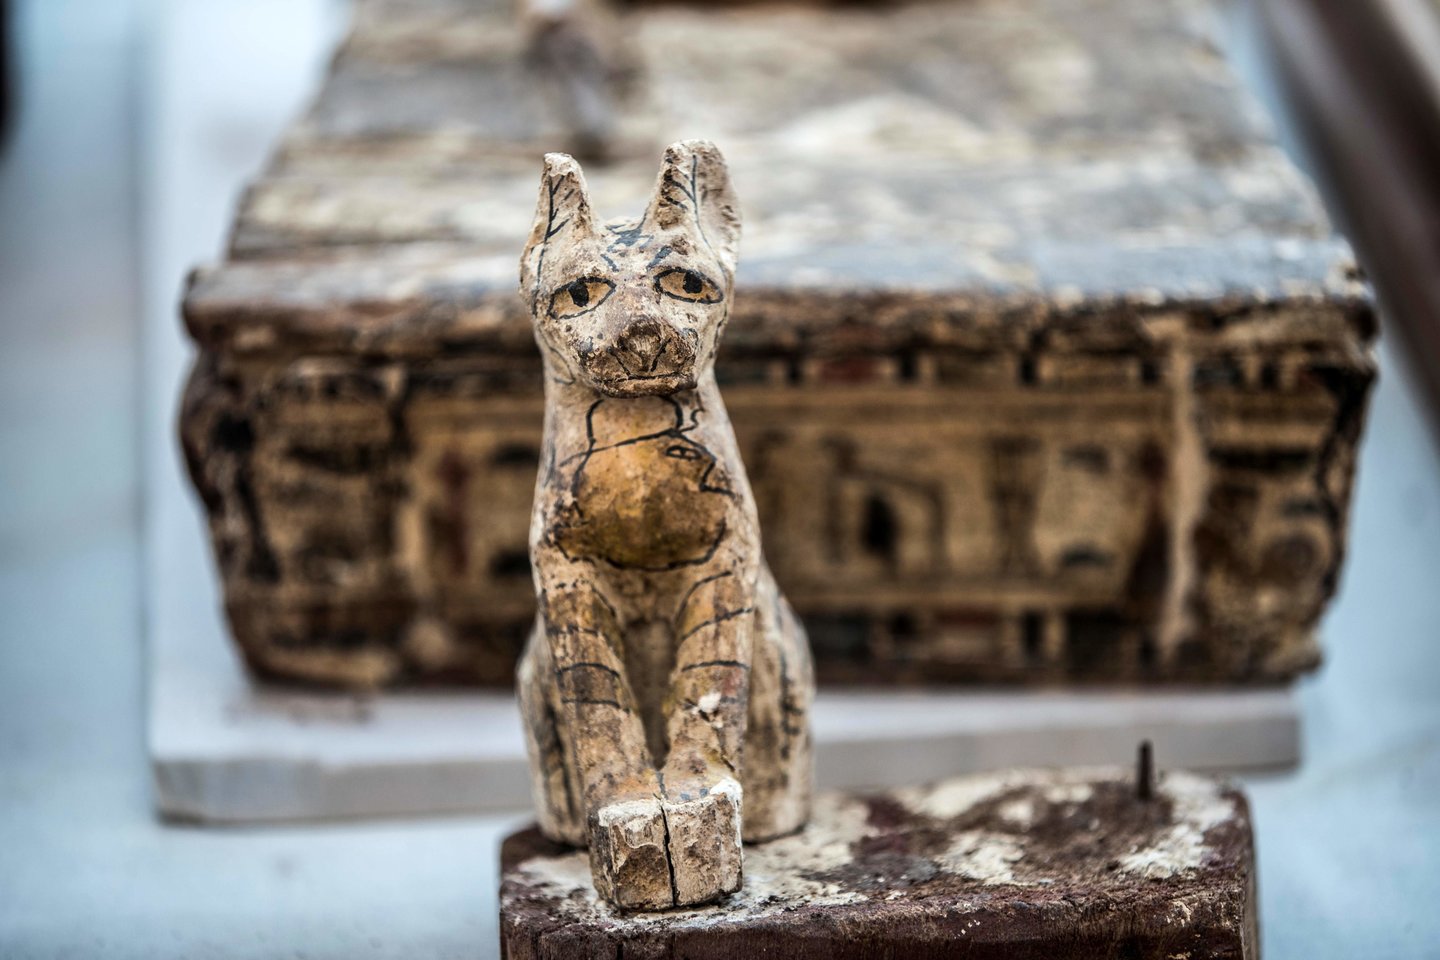  Kai kurie mokslininkai mano, kad senovės egiptiečiai iš tiesų negarbino kačių. Vietoje to, gyvūnai buvo gaudomi ir veisiami, kad galėtų būti mumifikuojami ir parduodami garbintojams.<br> AFP / Scanpix nuotr.